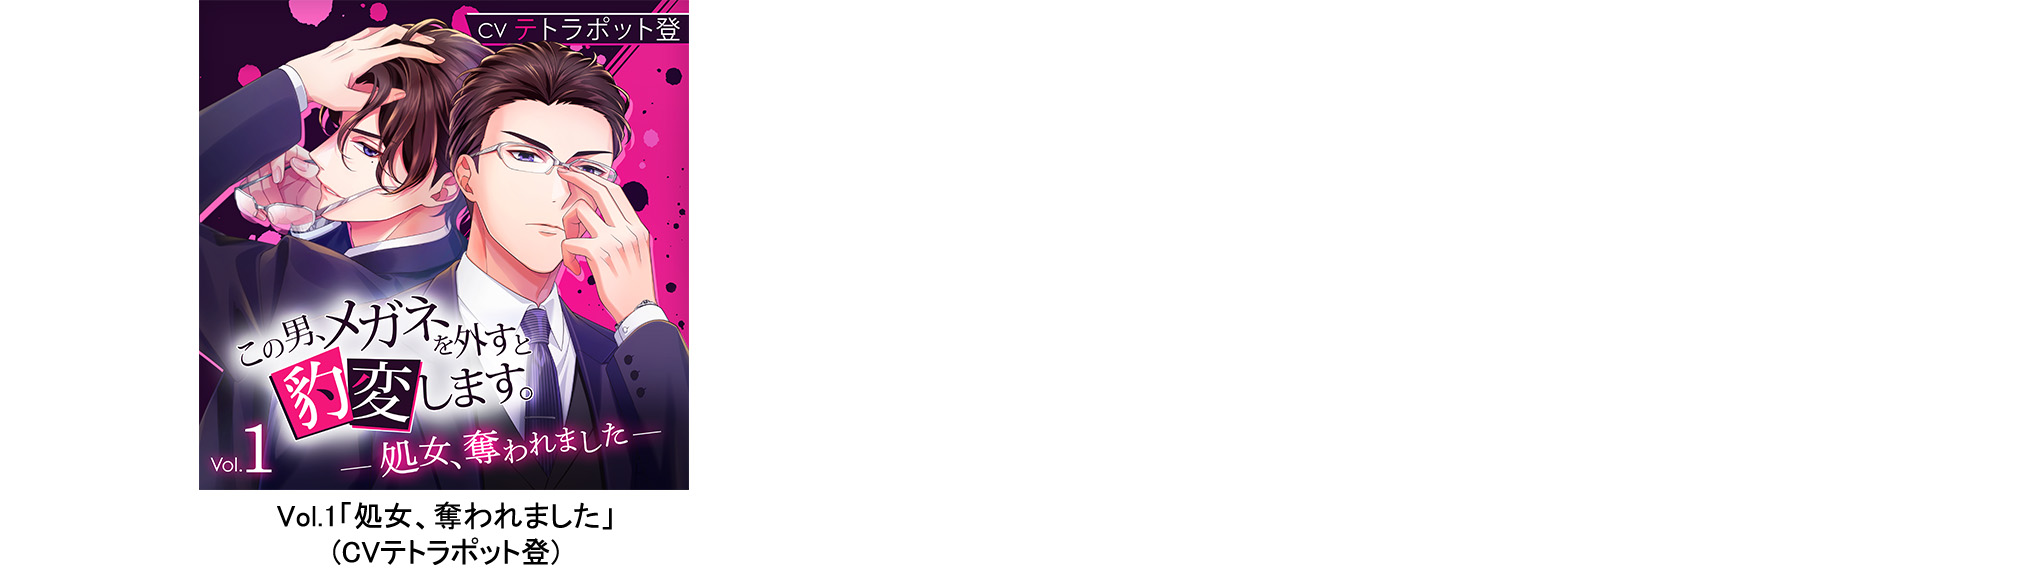 密室になった途端に『豹変』する彼との甘く官能的なストーリーが楽しめるQueen Lily「密室×豹変」シリーズCD盤　3月31日(金)3タイトル同時発売のサブ画像14